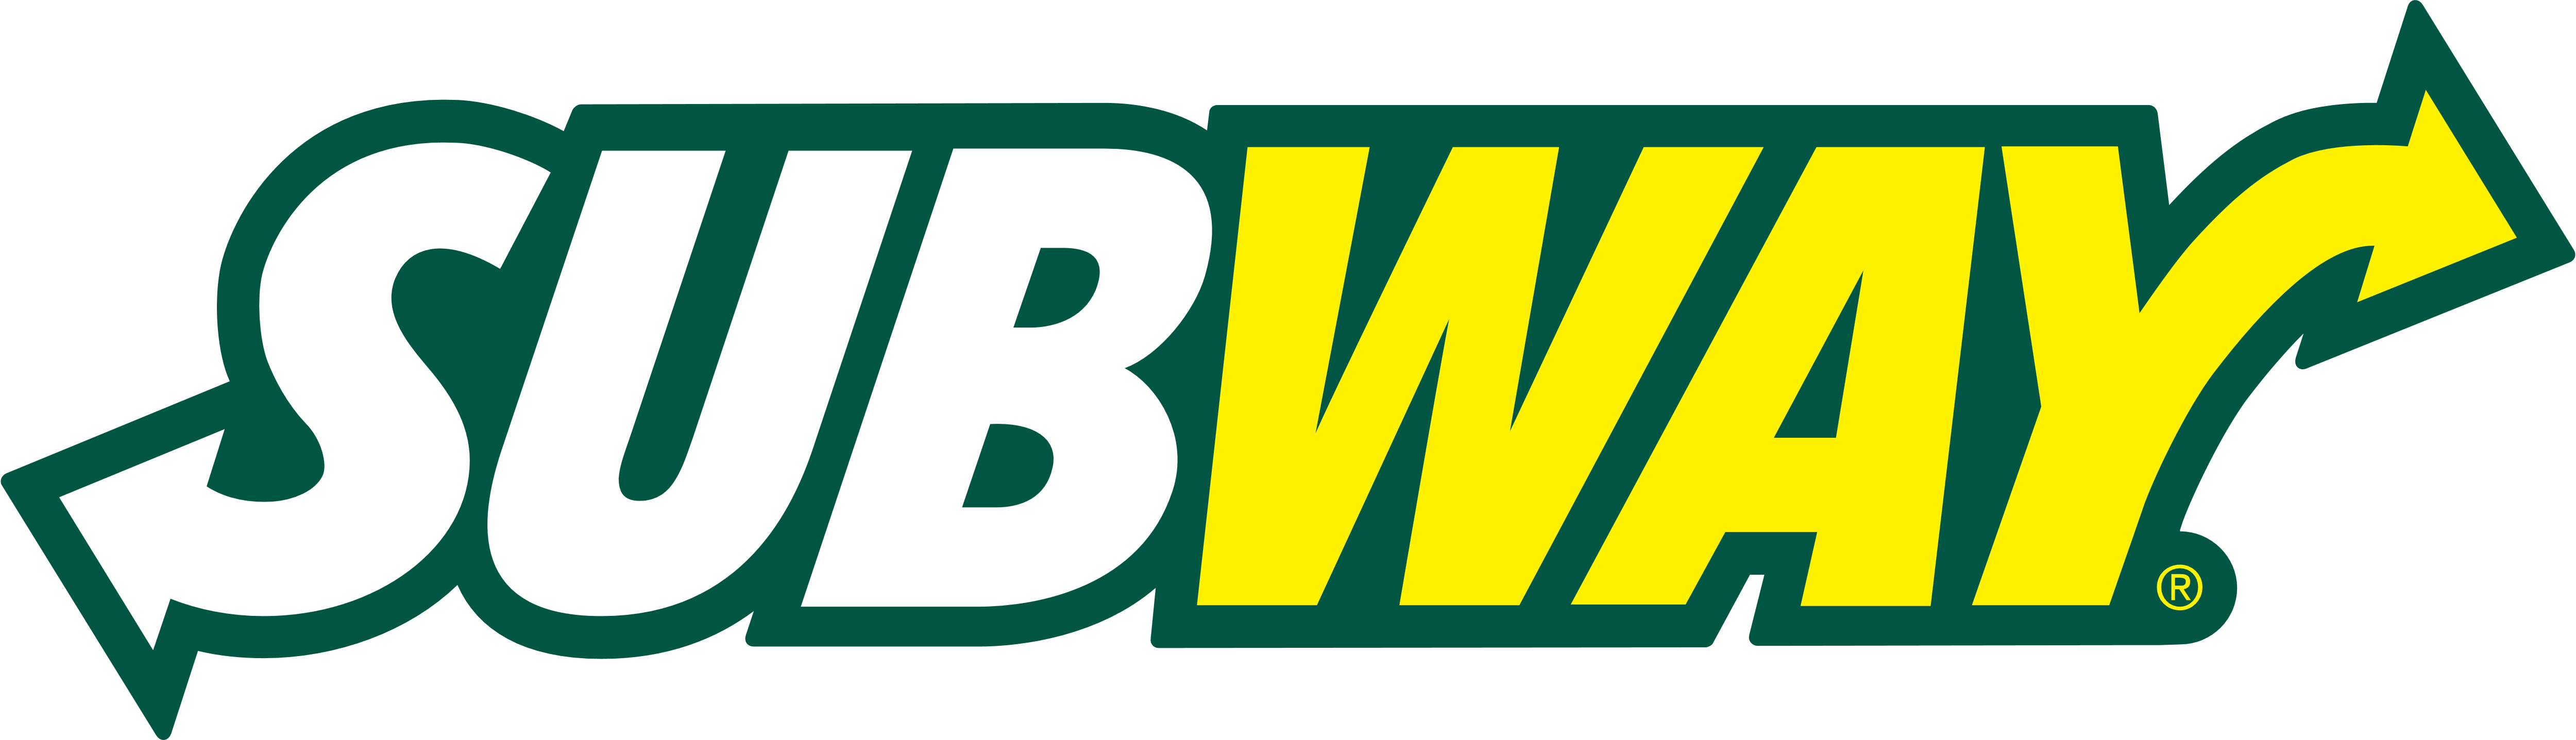 Subway_logo_logotype_emblem